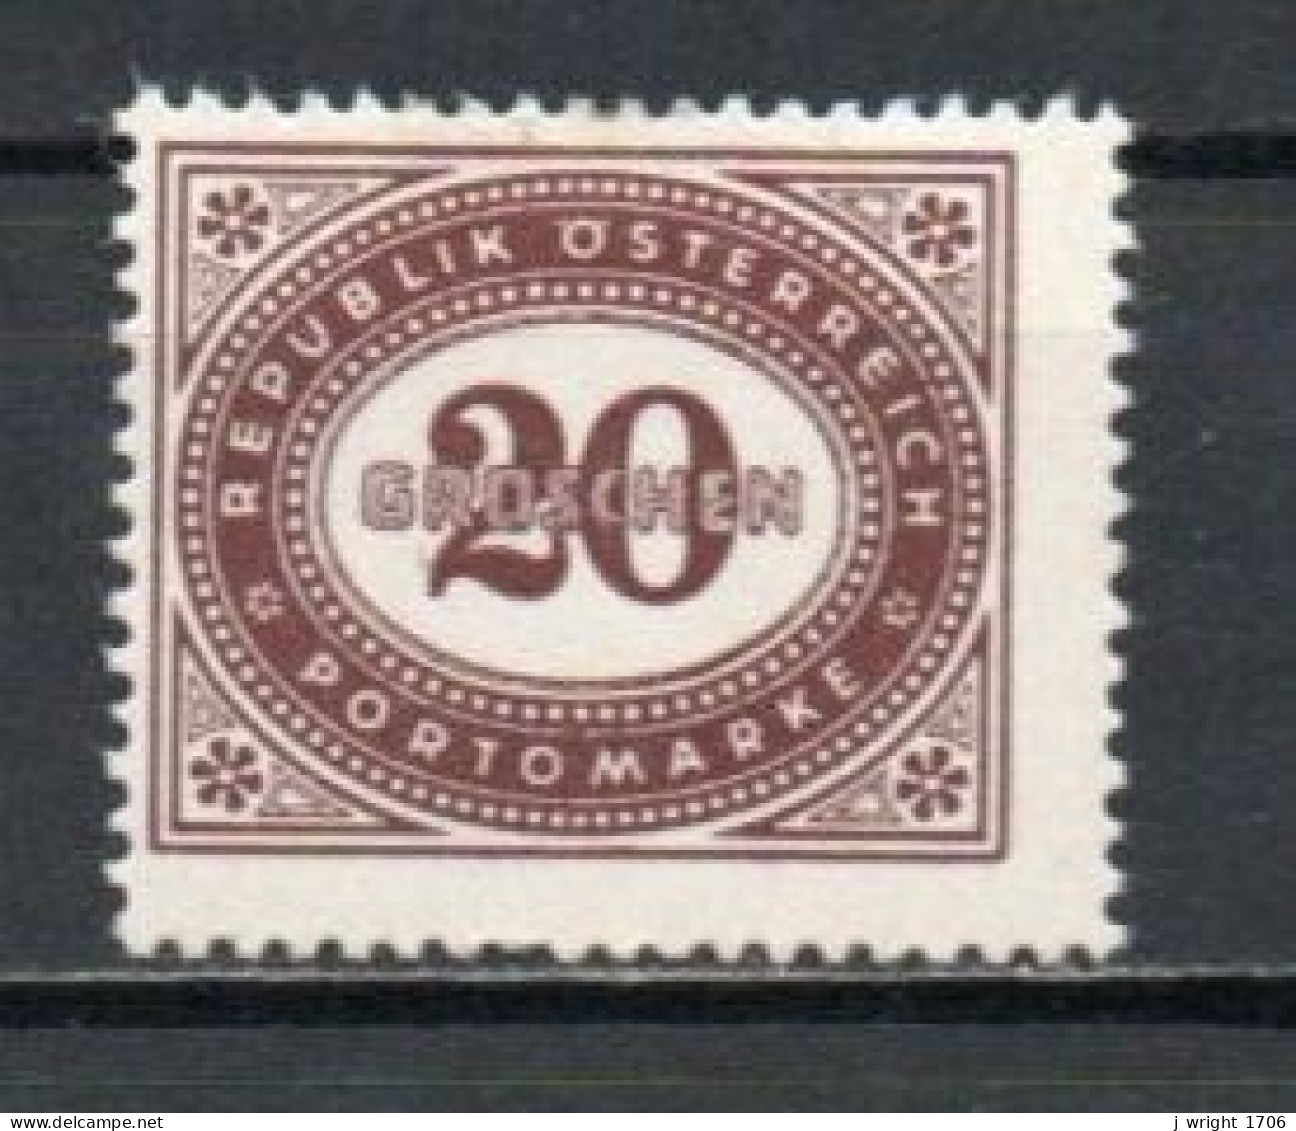 Austria, 1947, Numeral In Oval Frame, 20g, MH - Taxe